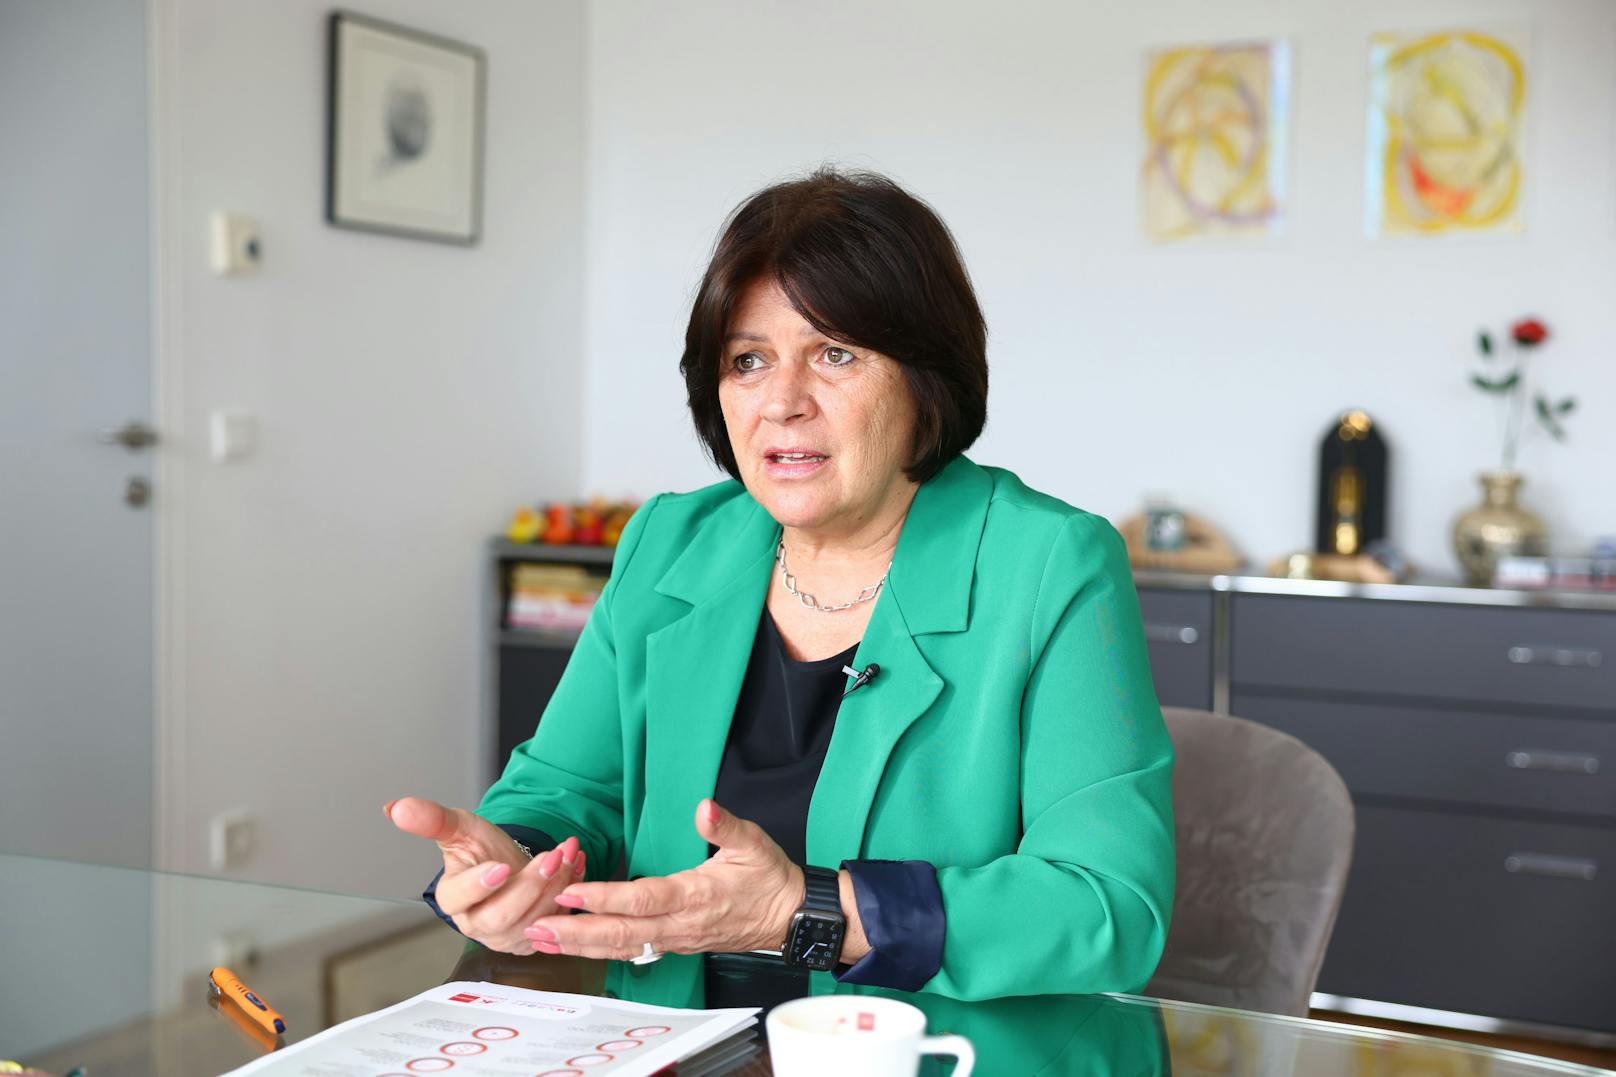 Anderl stellt in ihrer Rolle als AK-Präsidentin die Anliegen von Frauen in den Vordergrund.